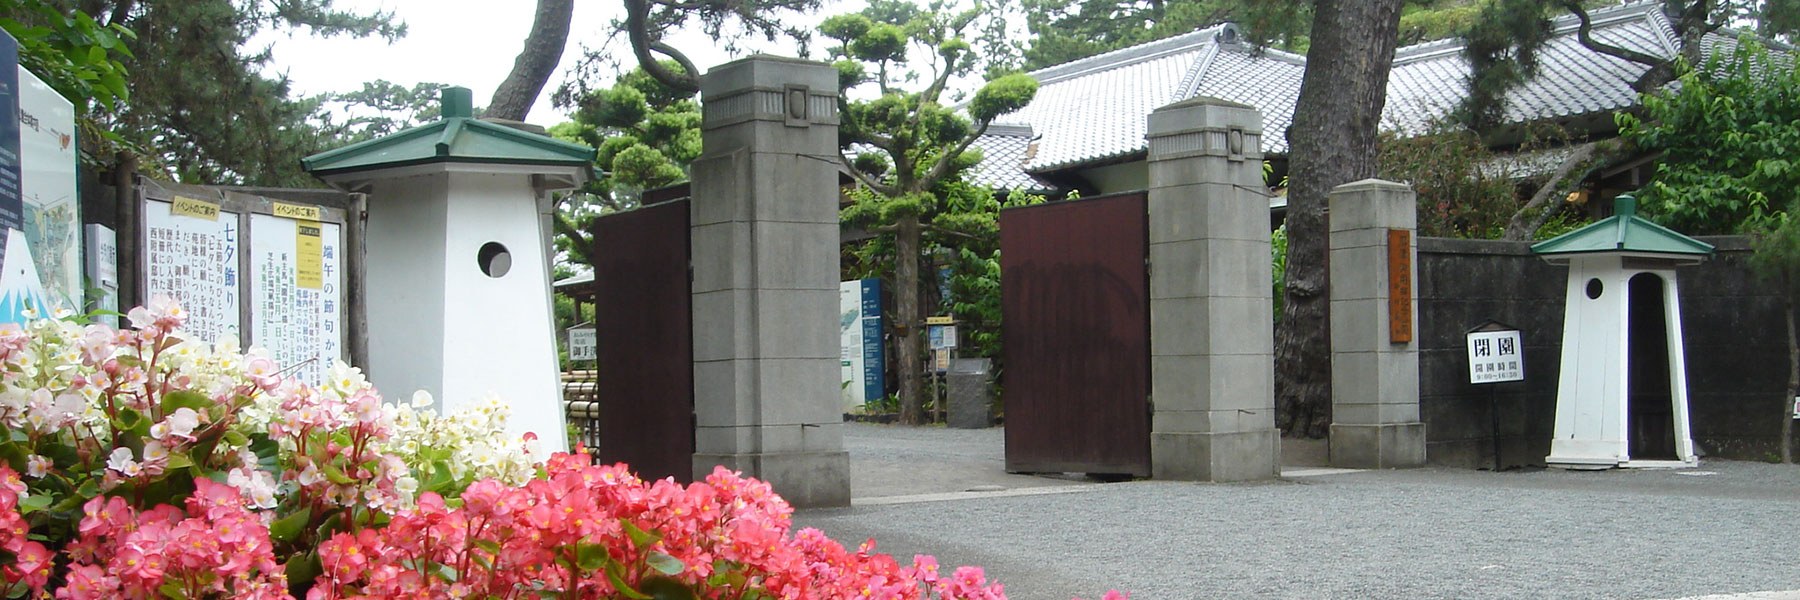 The Numazu Imperial Villa Memorial Park Entrance Gate